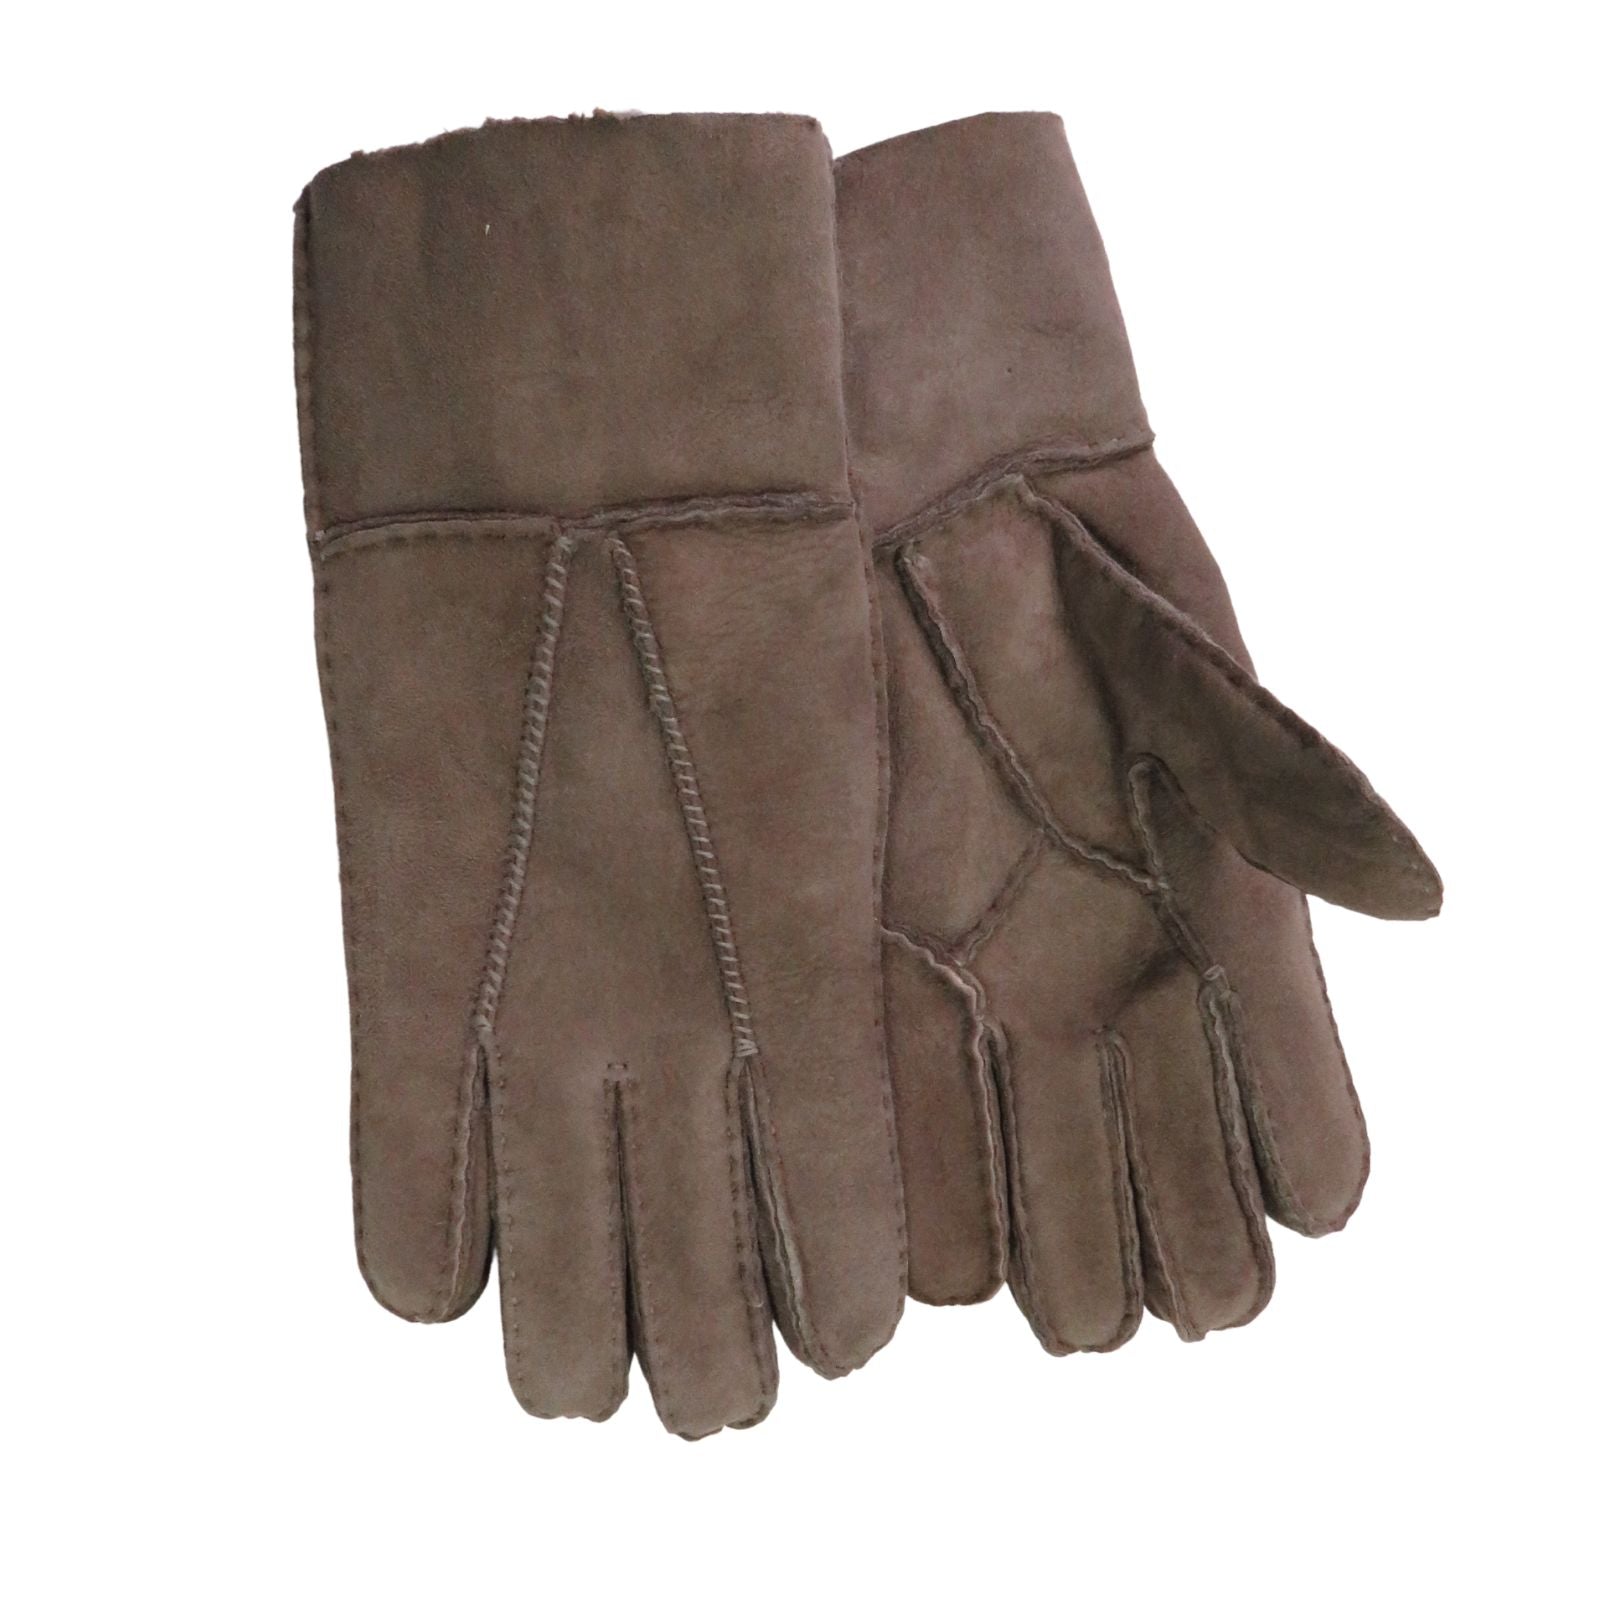 Women's Sheepskin Gloves, Our "Dogwalker" In Brown